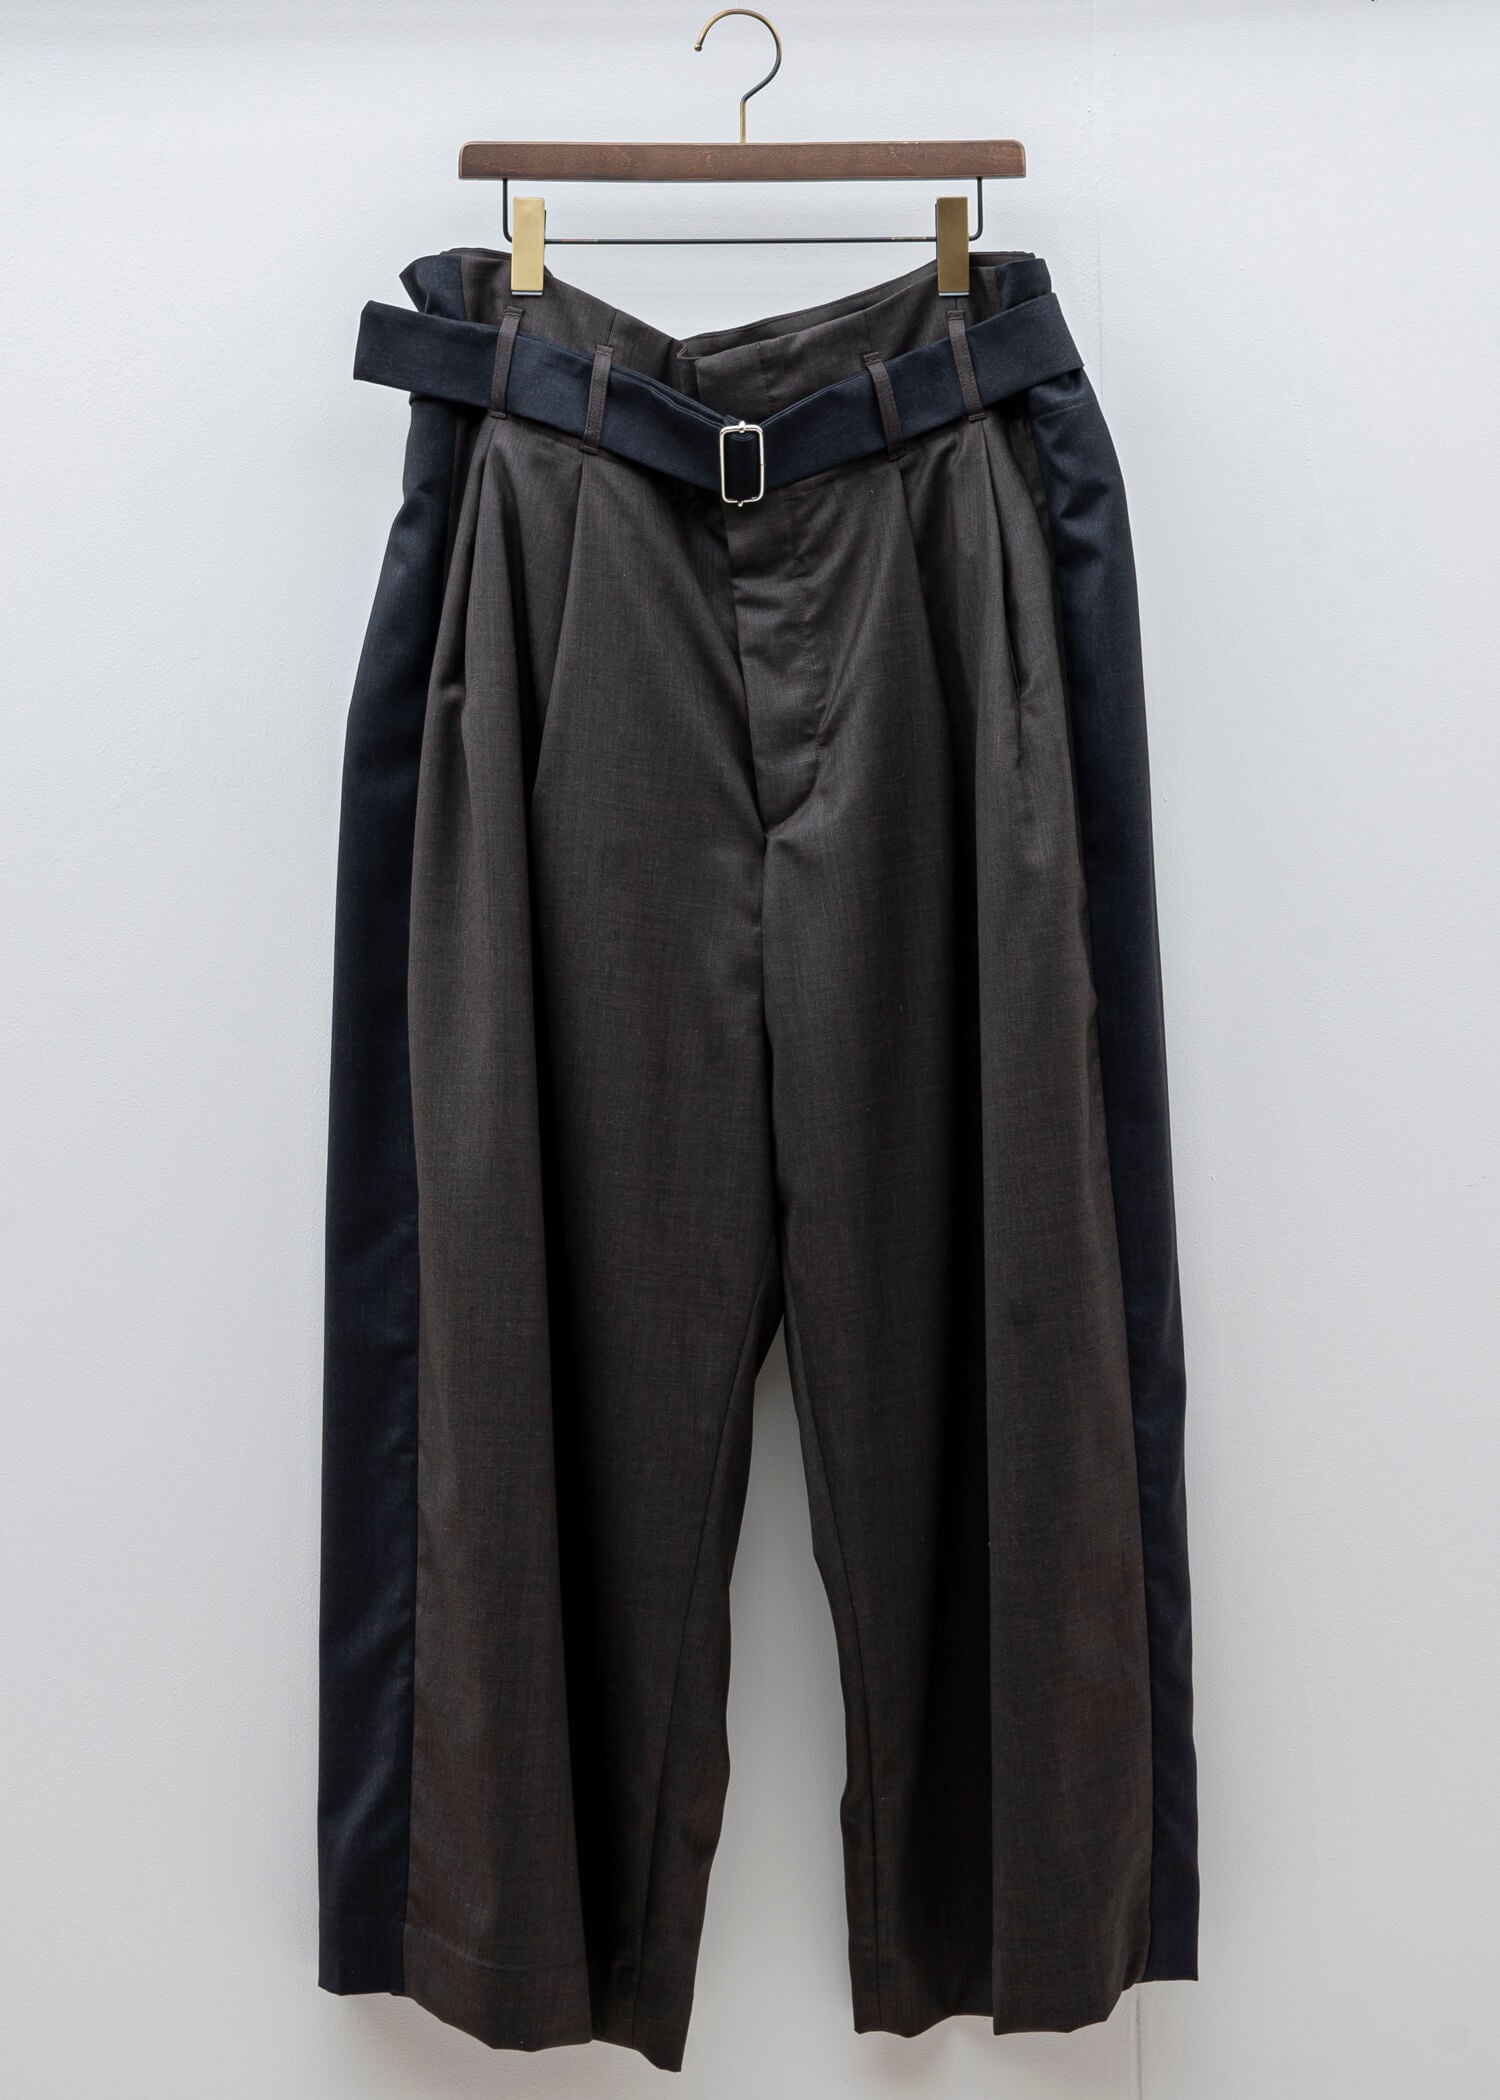 HED MAYNER / 阔腿裤 / 灰色和棕色冷羊毛